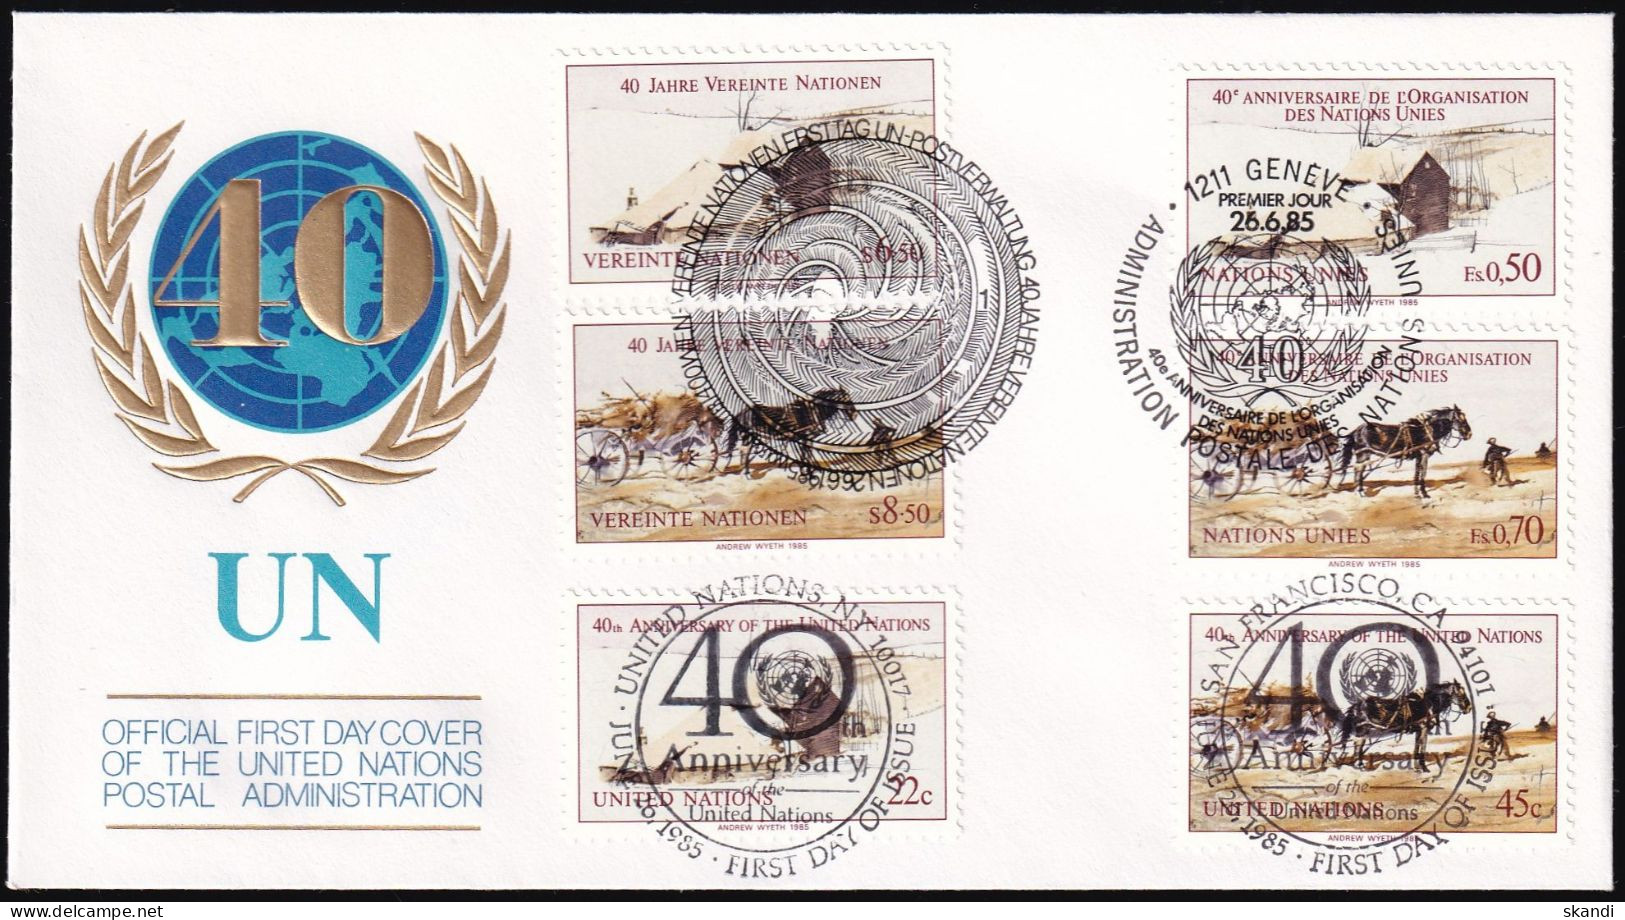 UNO NEW YORK - WIEN - GENF 1985 TRIO-FDC 40 Jahre Vereinte Nationen - Gemeinschaftsausgaben New York/Genf/Wien